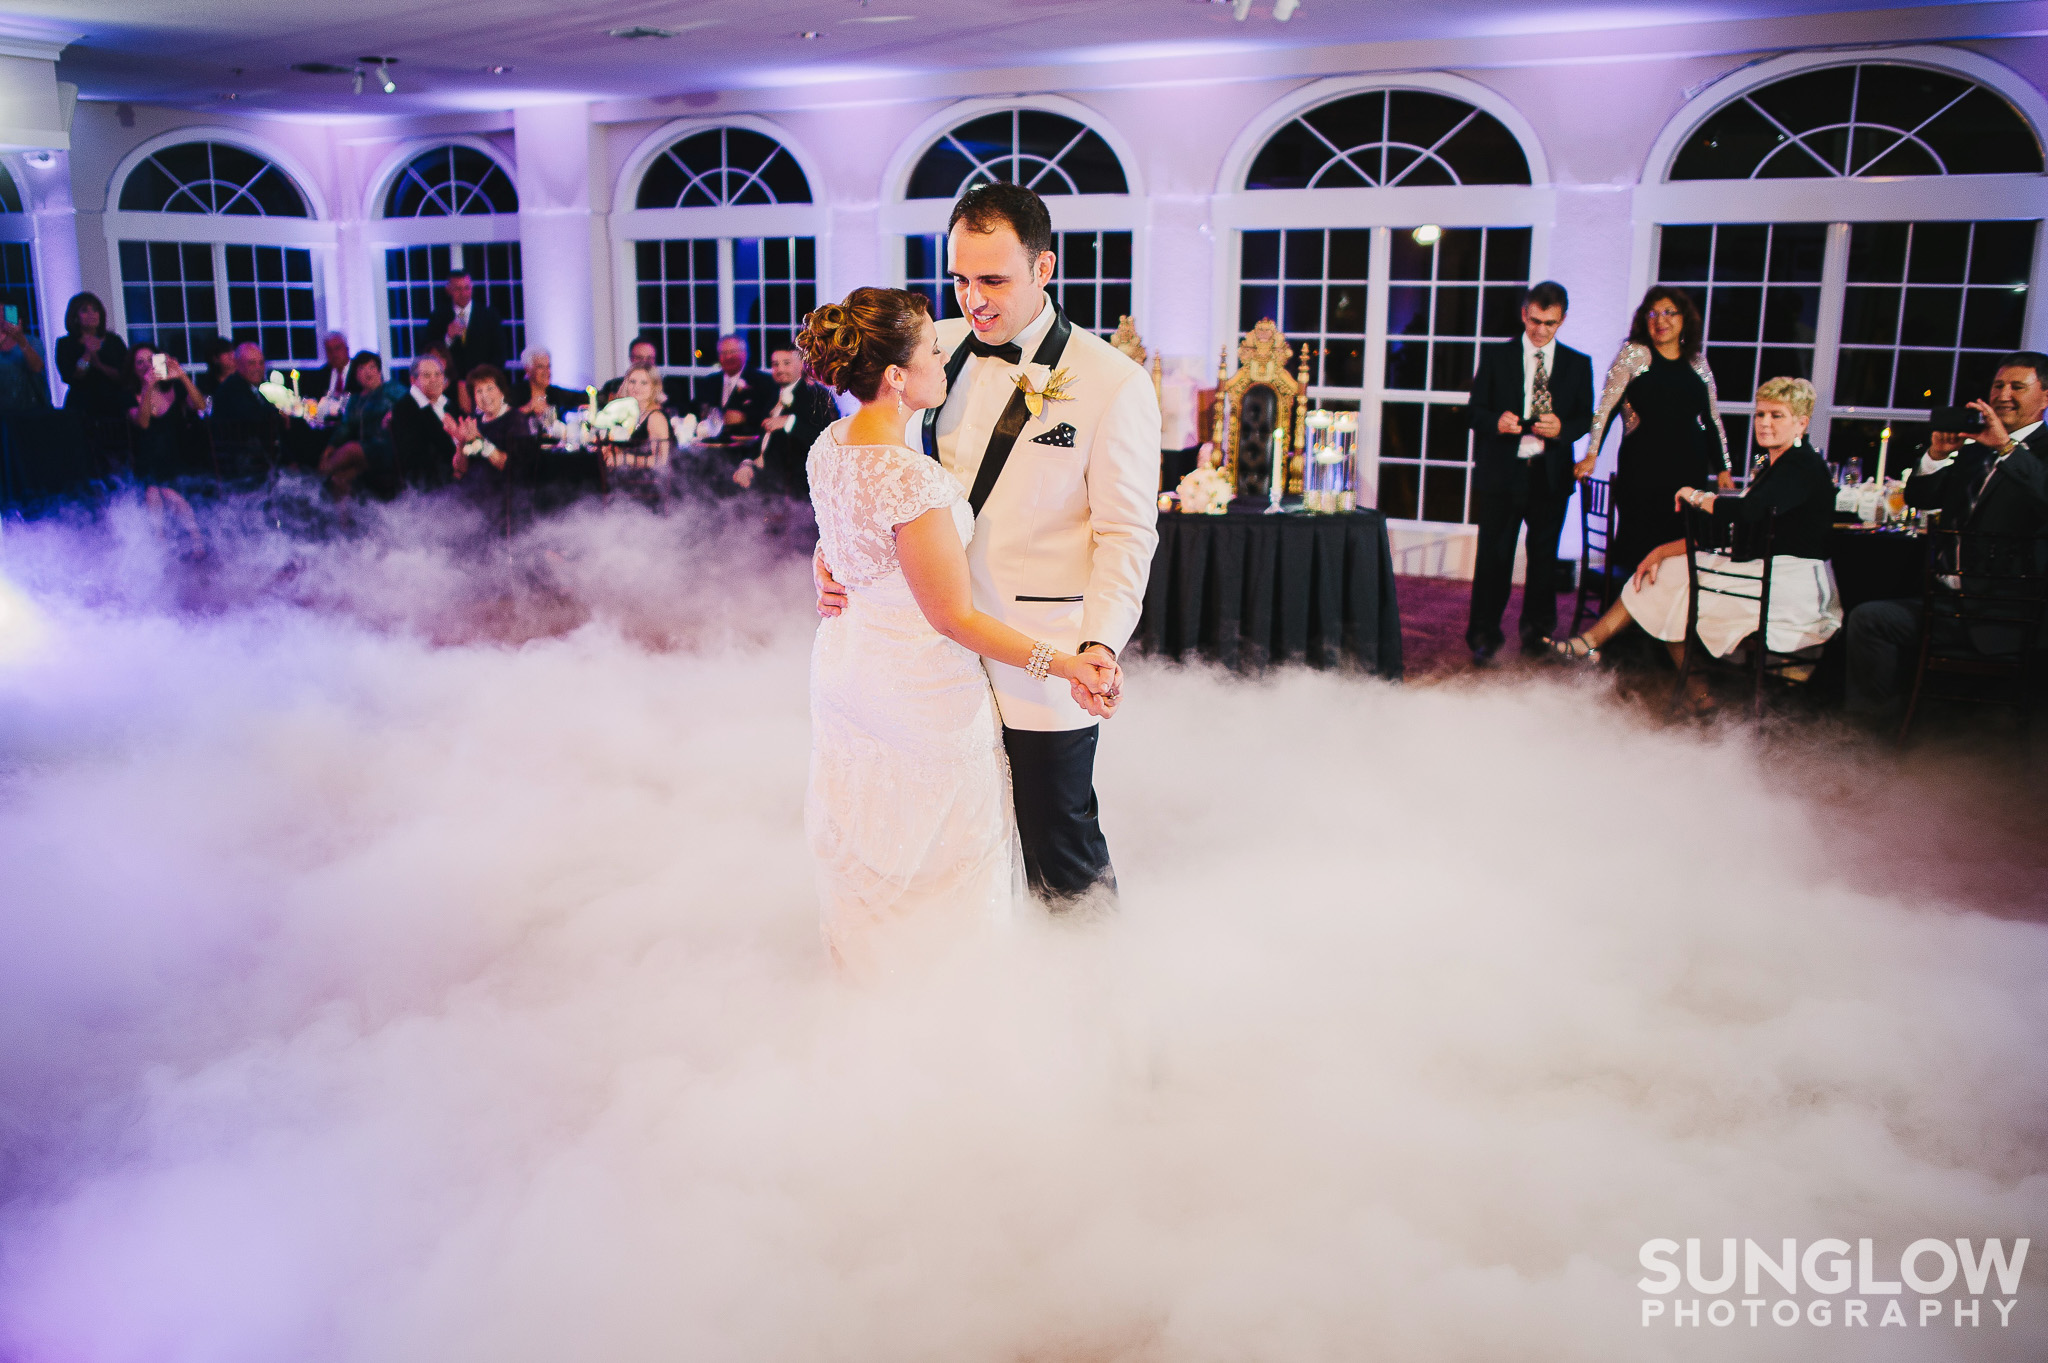 ‪#Dancingonacloud #Weddinguplighting #WeddingDJ #Tampauplighting #TampaDJ #MichaelAnthonyProductions #Weddingspecialeffects #Sunglowphotography #Glenlakescountryclub‬